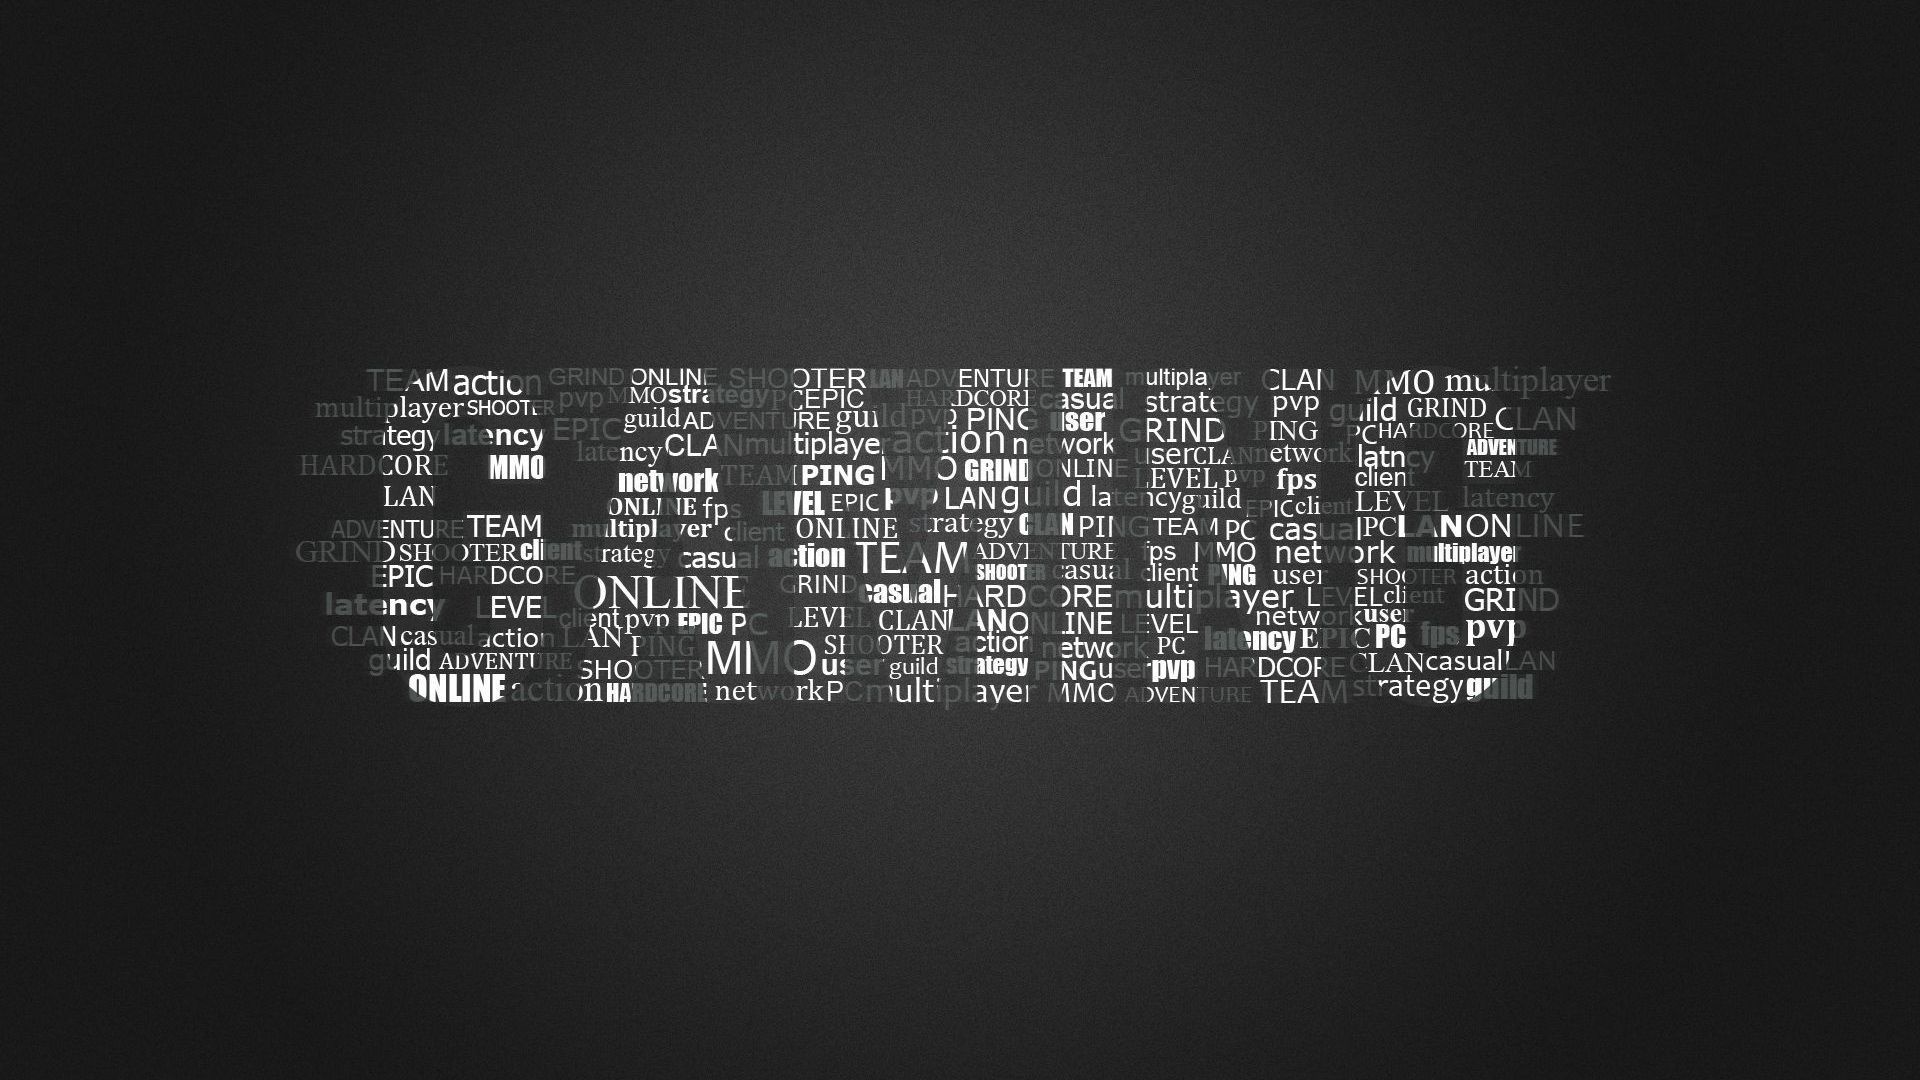 Cool Gaming Logos Wallpapers